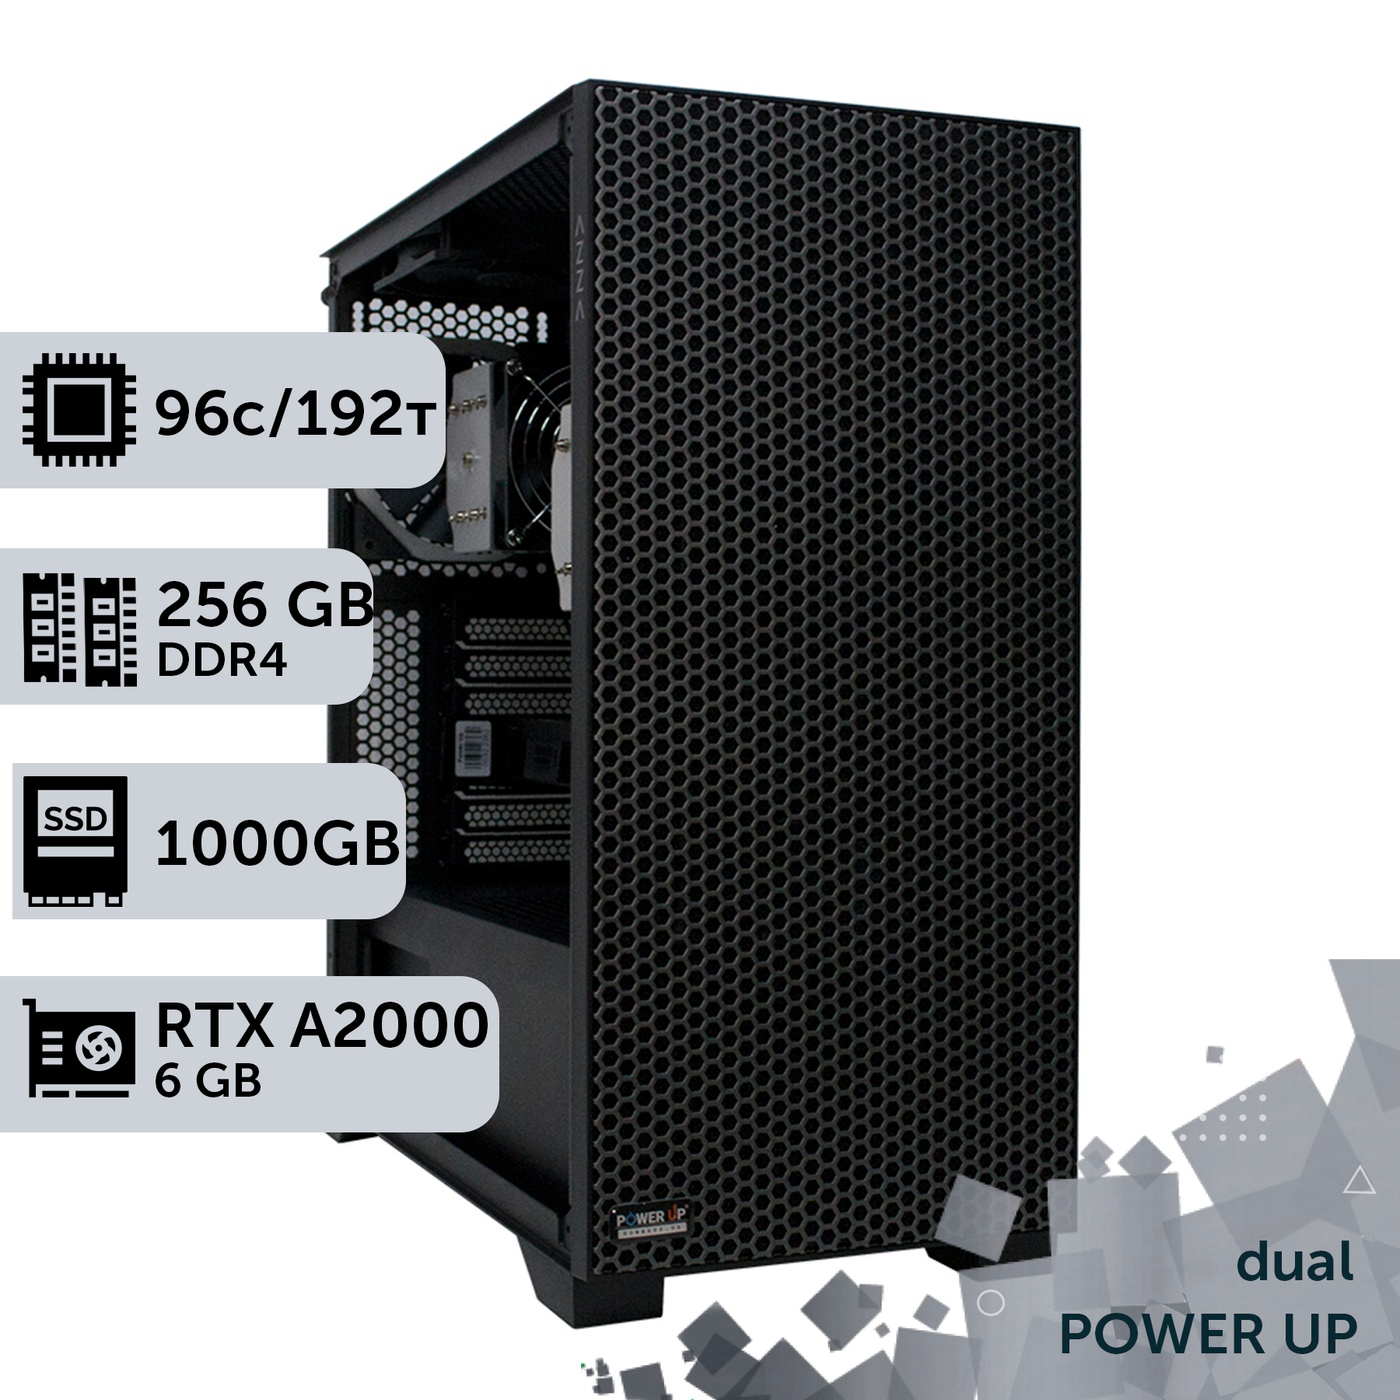 Двухпроцессорная рабочая станция PowerUp #381 AMD EPYC 7642 x2/256 GB/SSD 1TB/NVIDIA Quadro RTX A2000 6GB